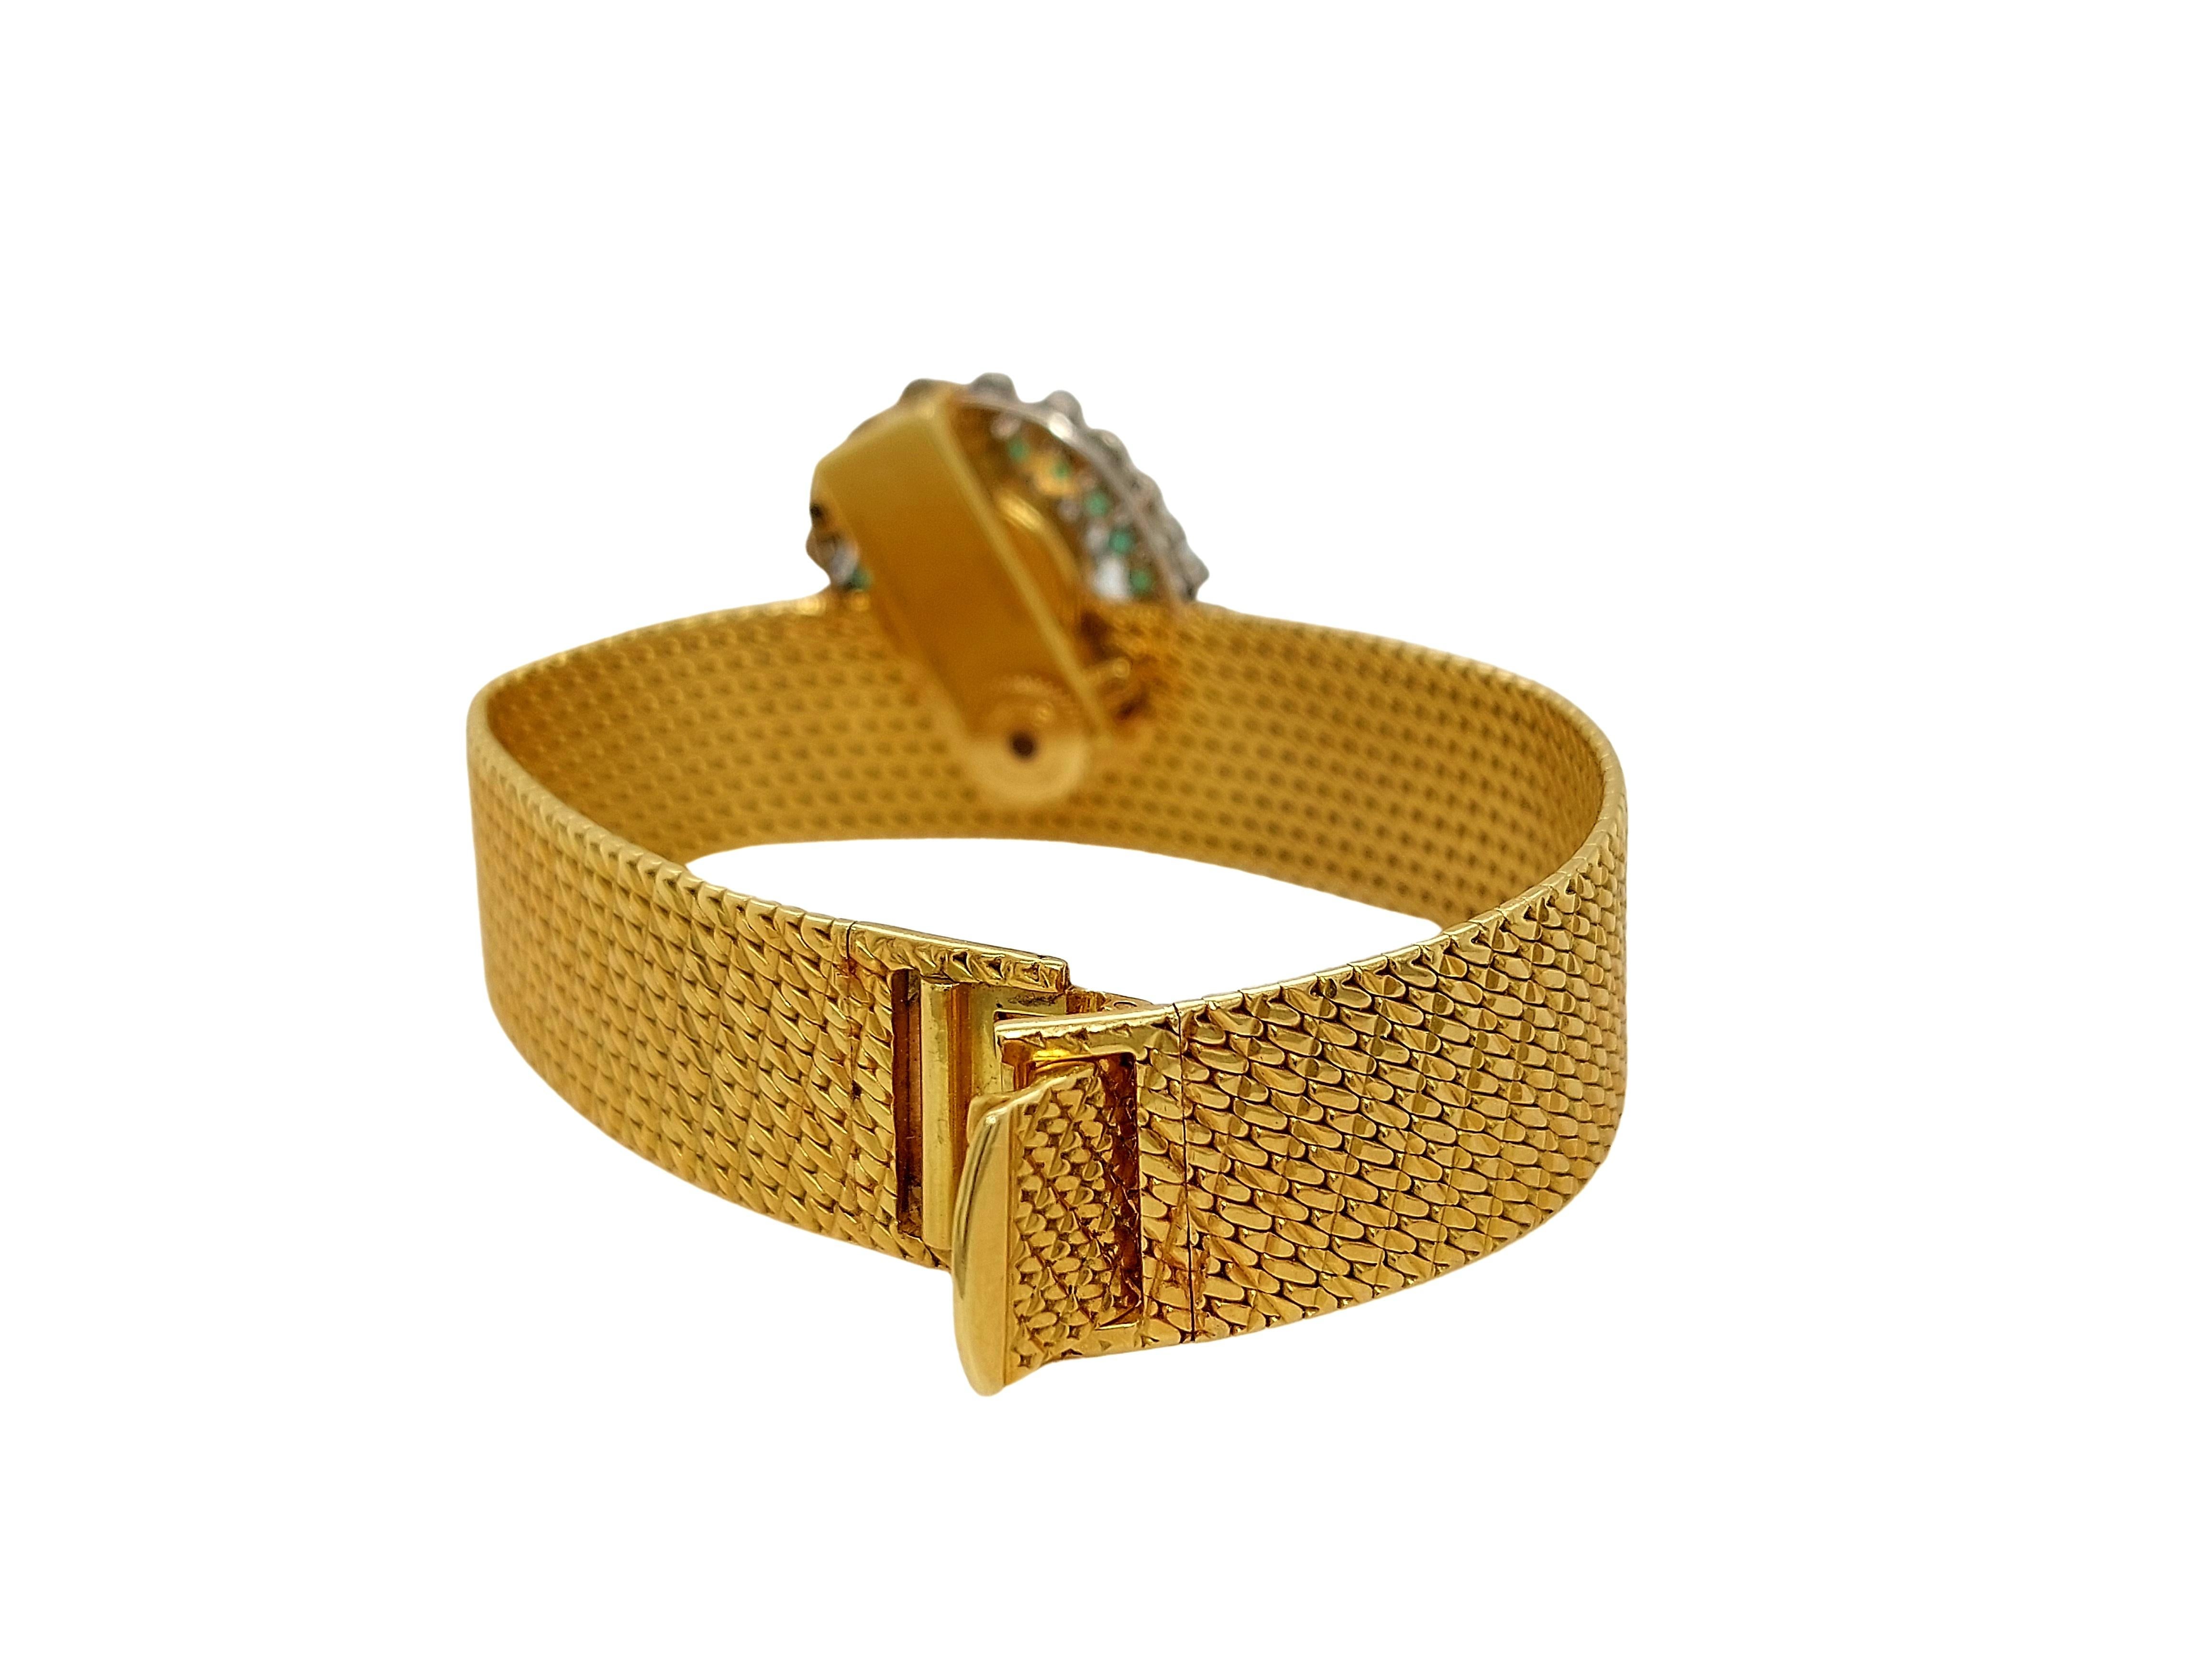 18kt Vacheron Constantin Geneve Bracelet Watch with Smallest Baguette Movement For Sale 5